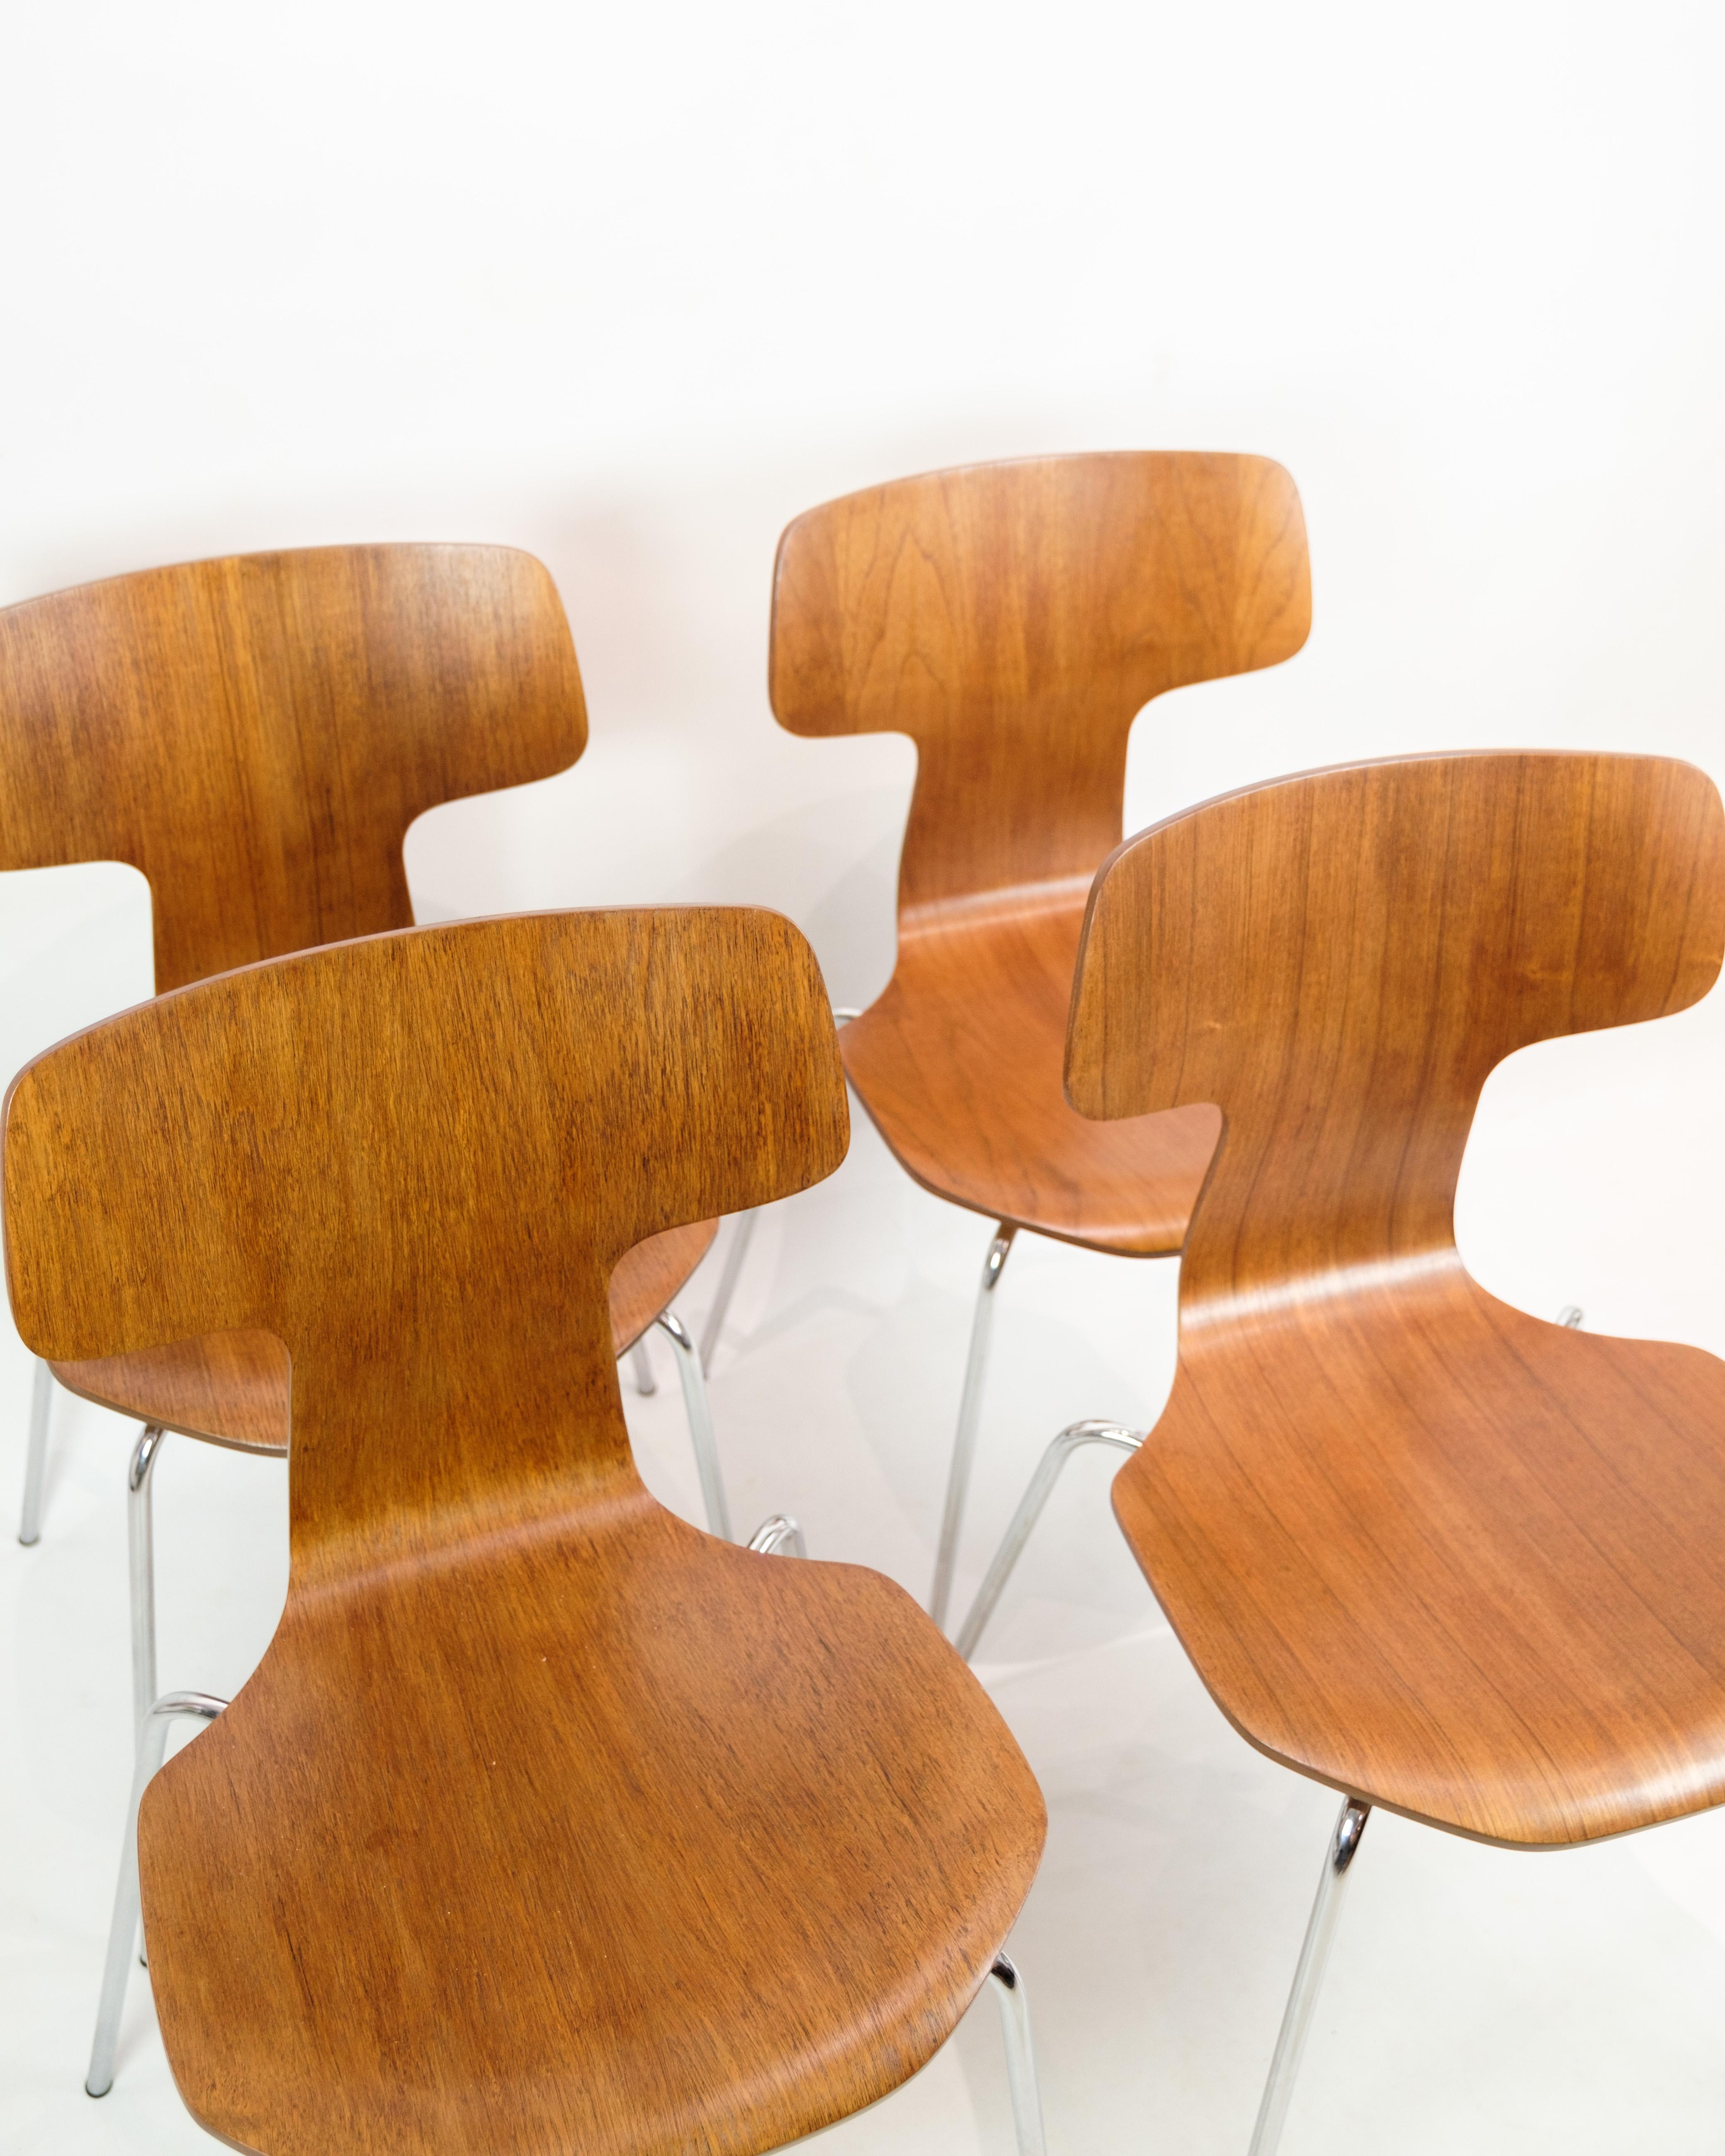 Holen Sie sich das legendäre dänische Design in Ihr Zuhause mit dem T-Stuhl, der von dem legendären Arne Jacobsen entworfen und von Fritz Hansen in den 1960er Jahren hergestellt wurde. Dieser Stuhl mit Chromgestell und Teakholz stellt eine